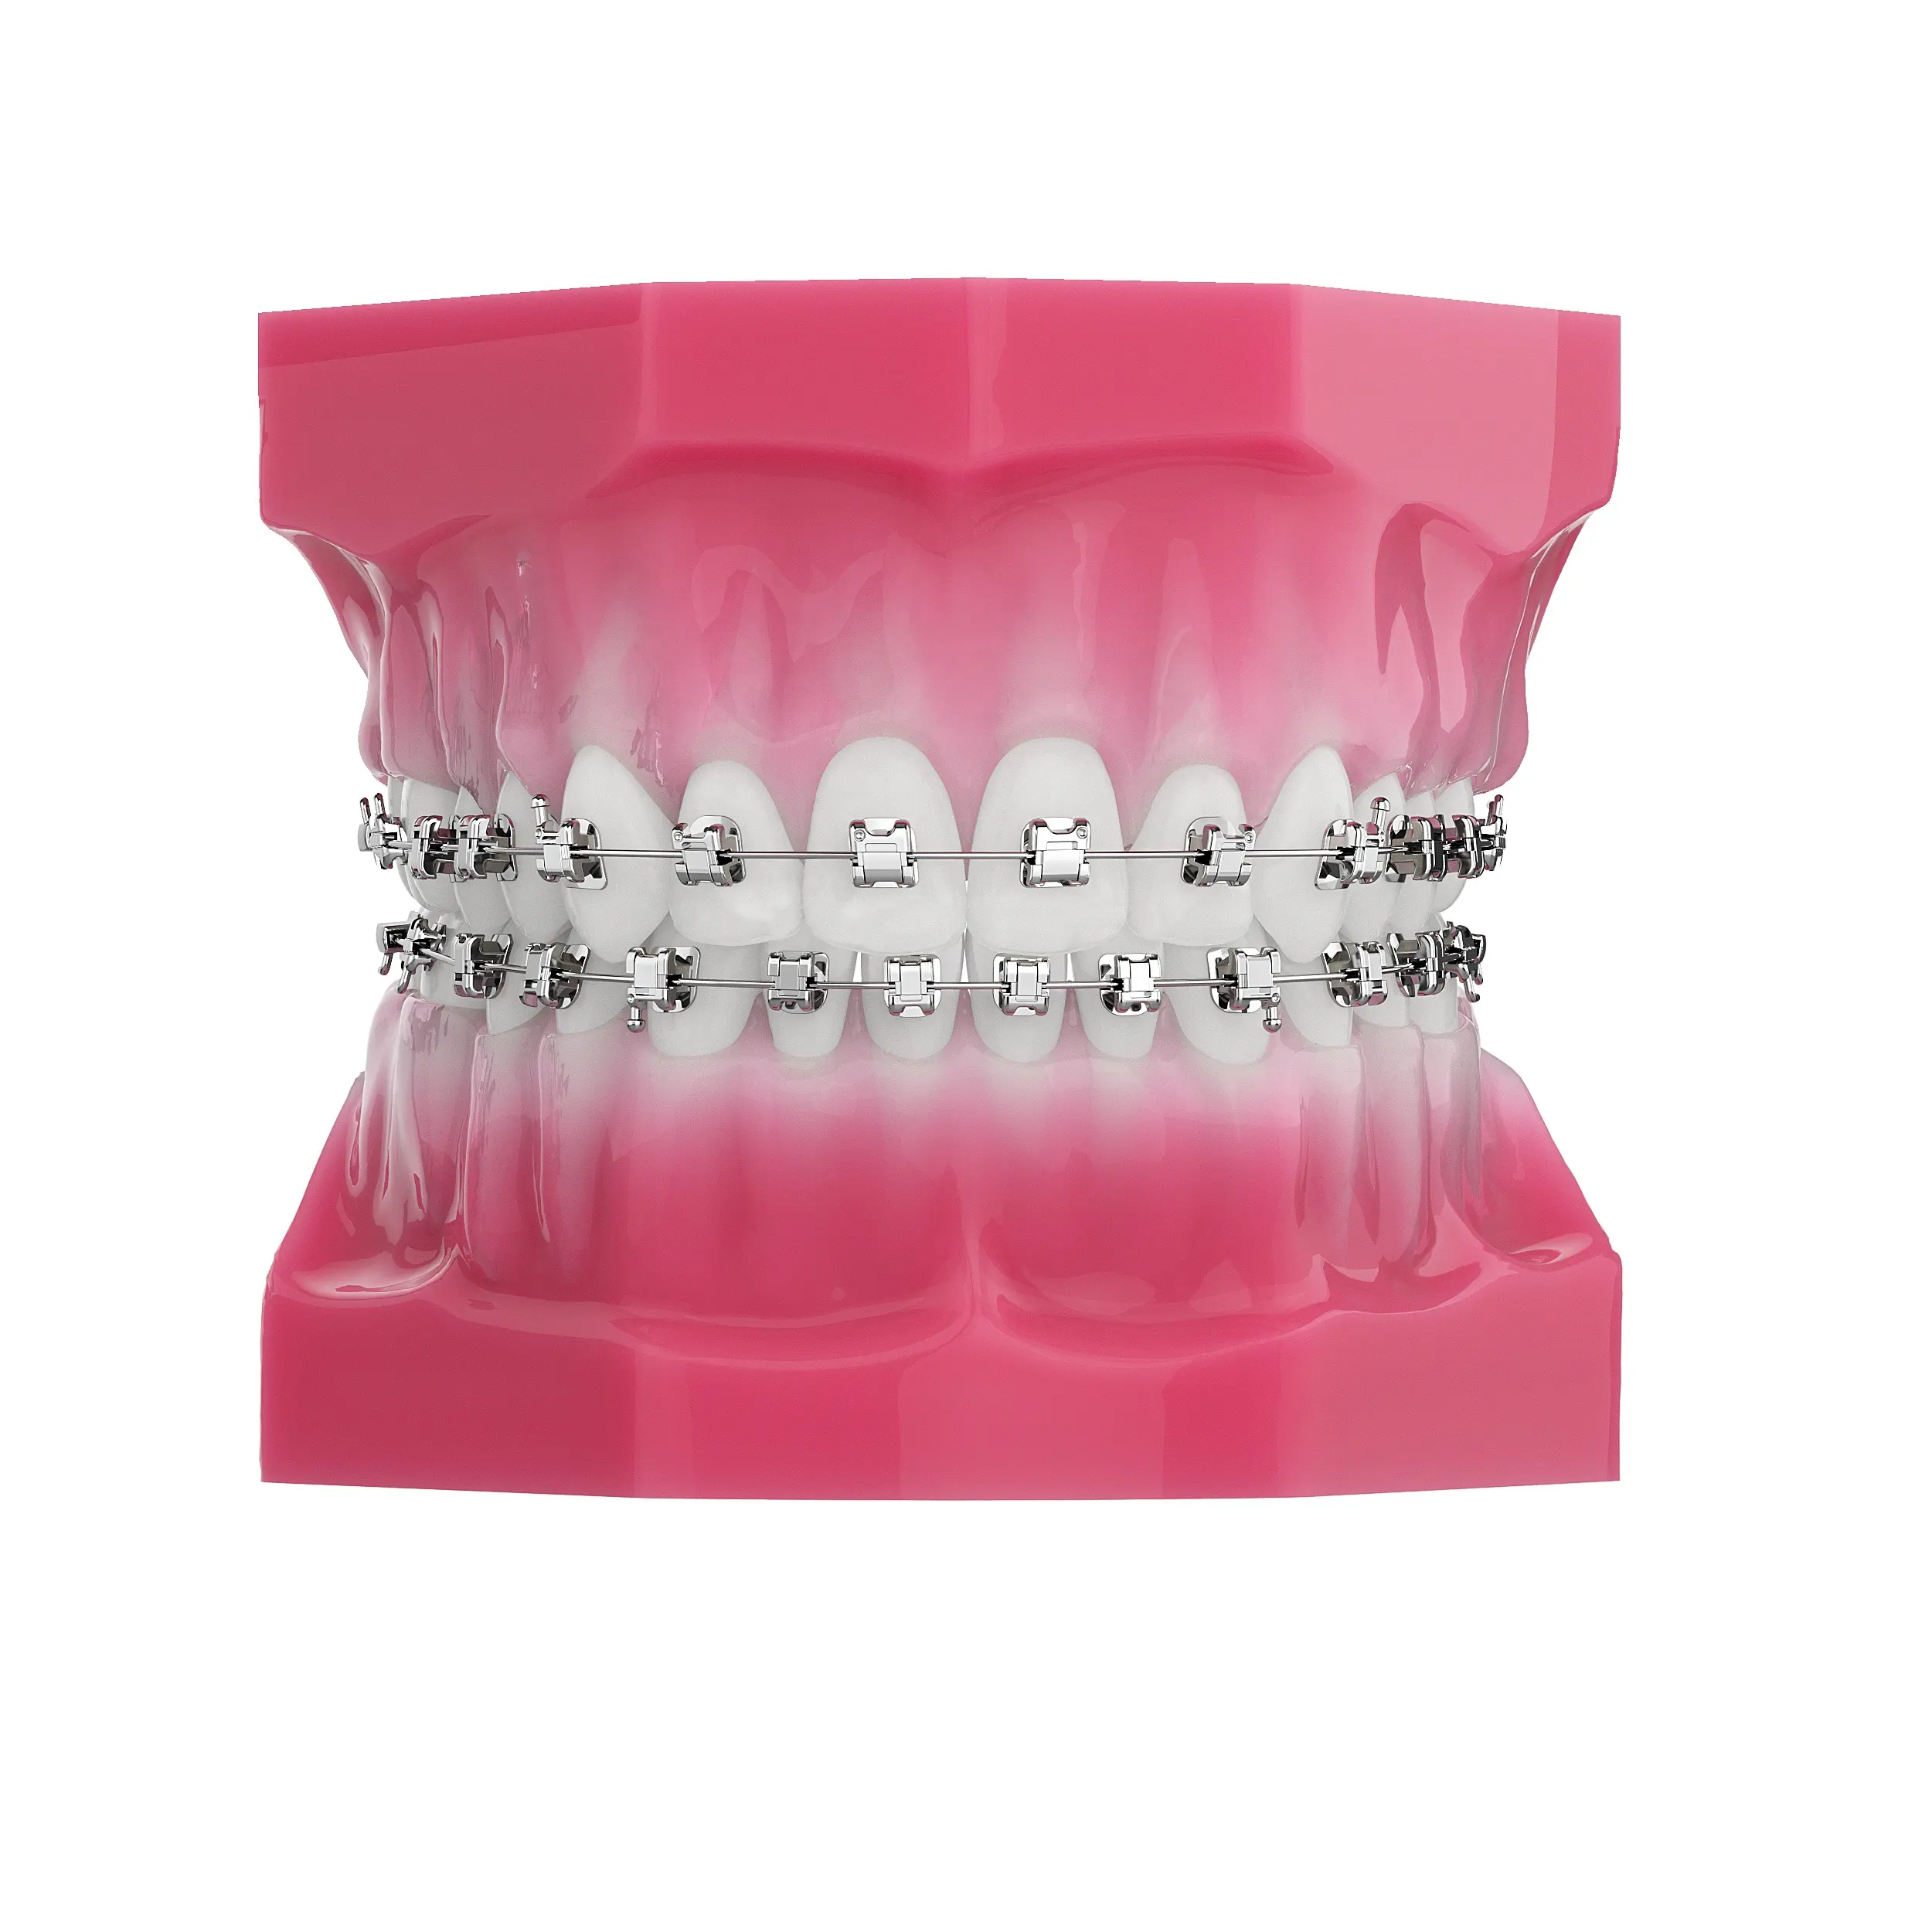 Progettazione di superfici Standard per staffe ortodontiche auto-collegamento in metallo e dispositivi ortodontici-macchinari orali